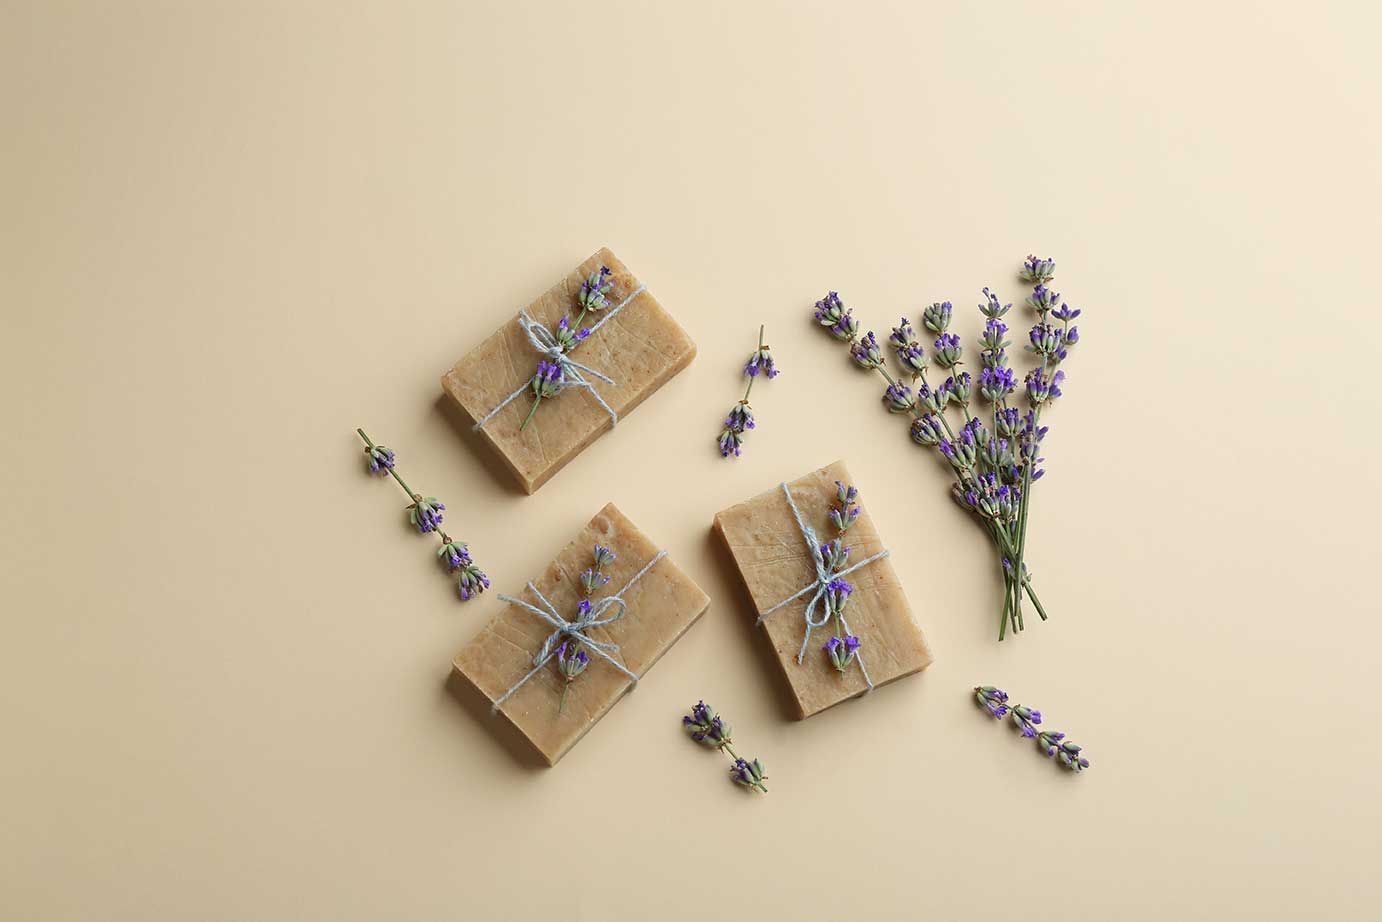 Handgefertigte Seifenstücke mit Lavendelblüten